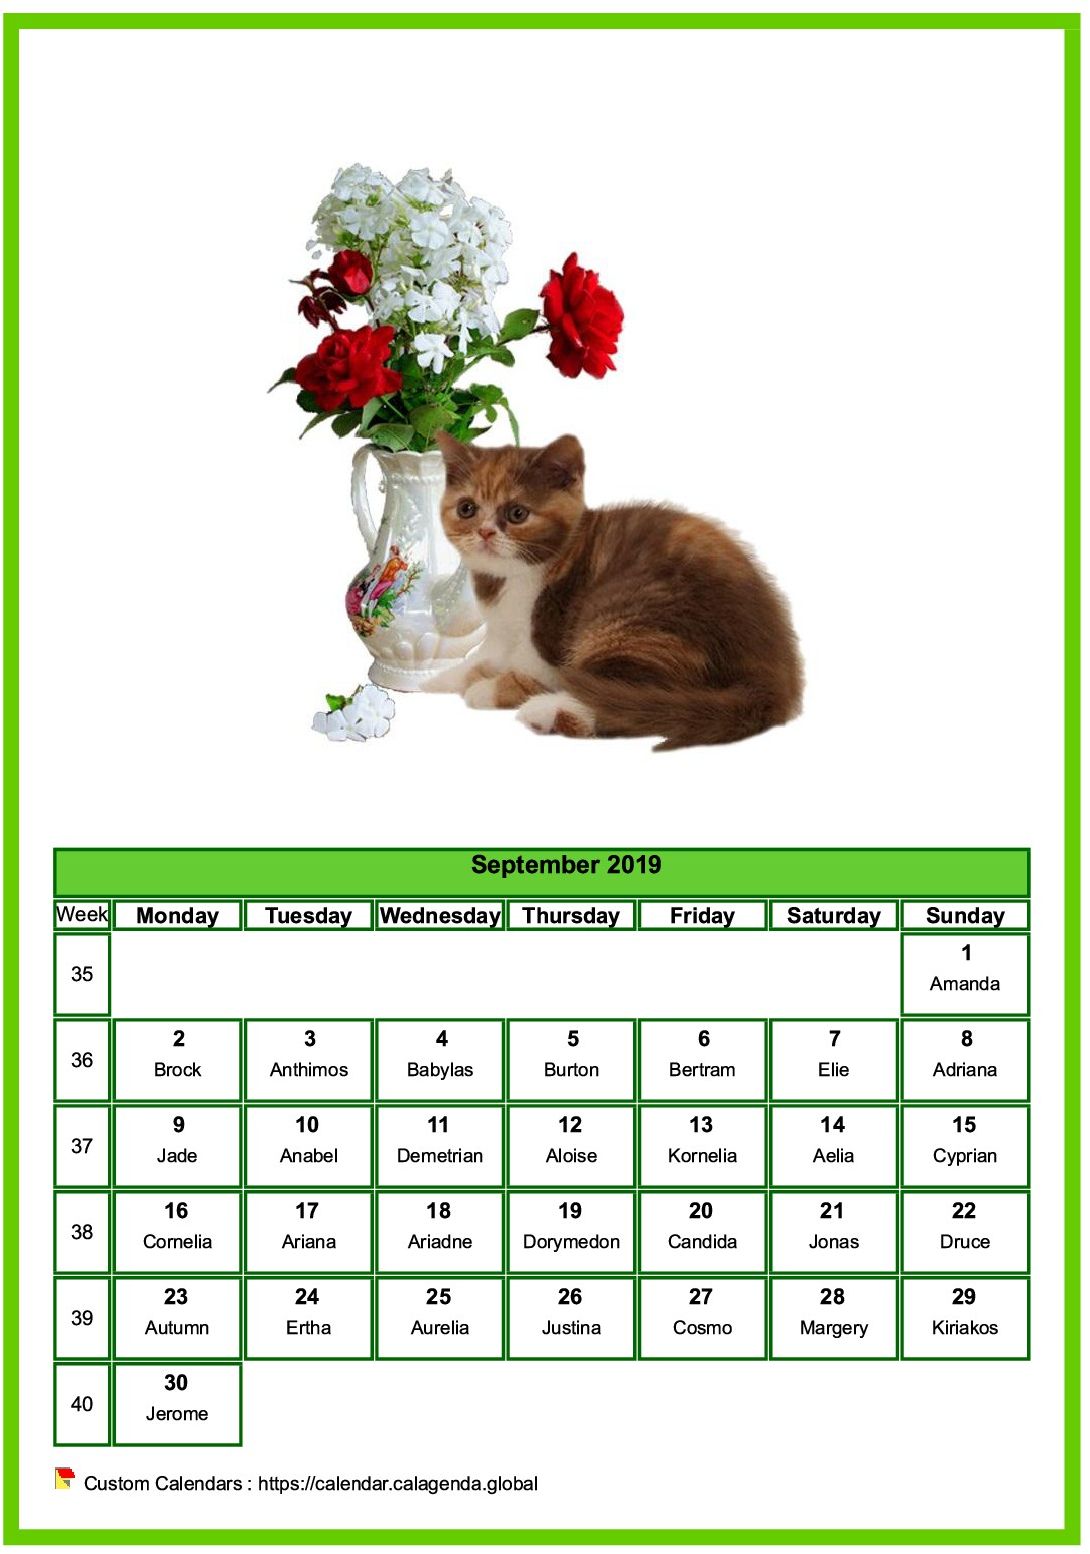 Calendar september 2019 cats